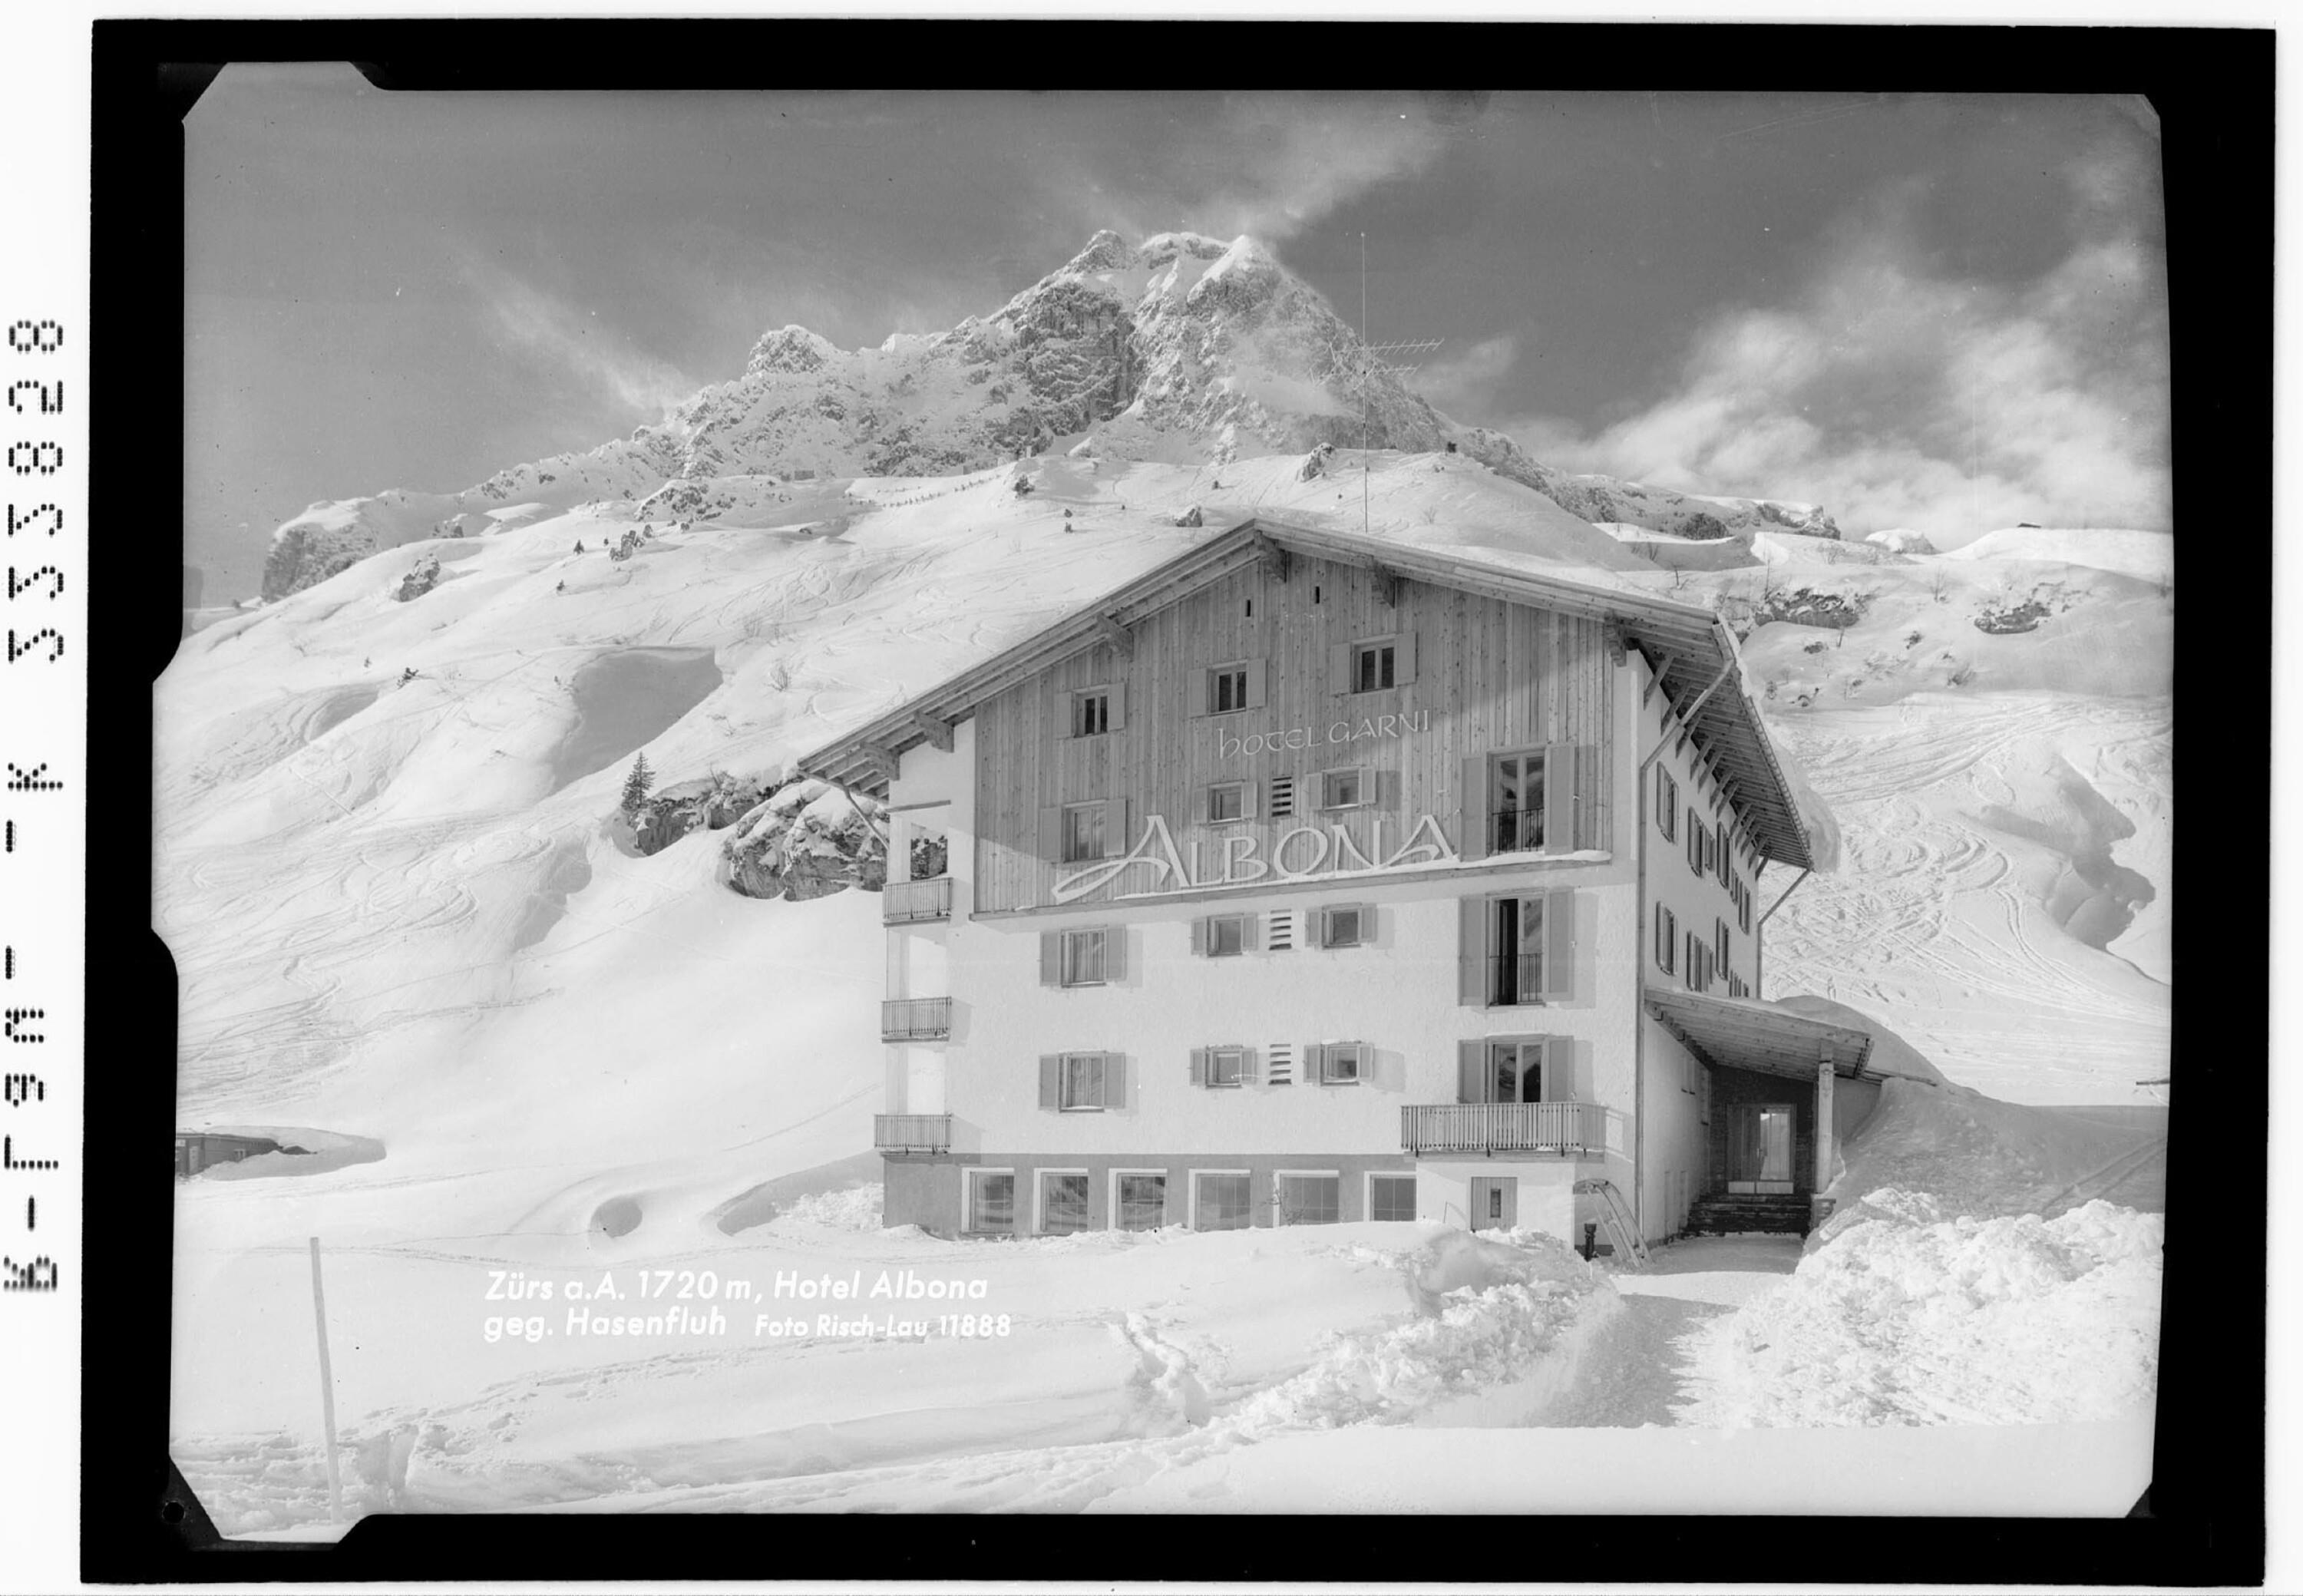 Zürs am Arlberg 1720 m / Hotel Albona gegen Hasenfluh></div>


    <hr>
    <div class=